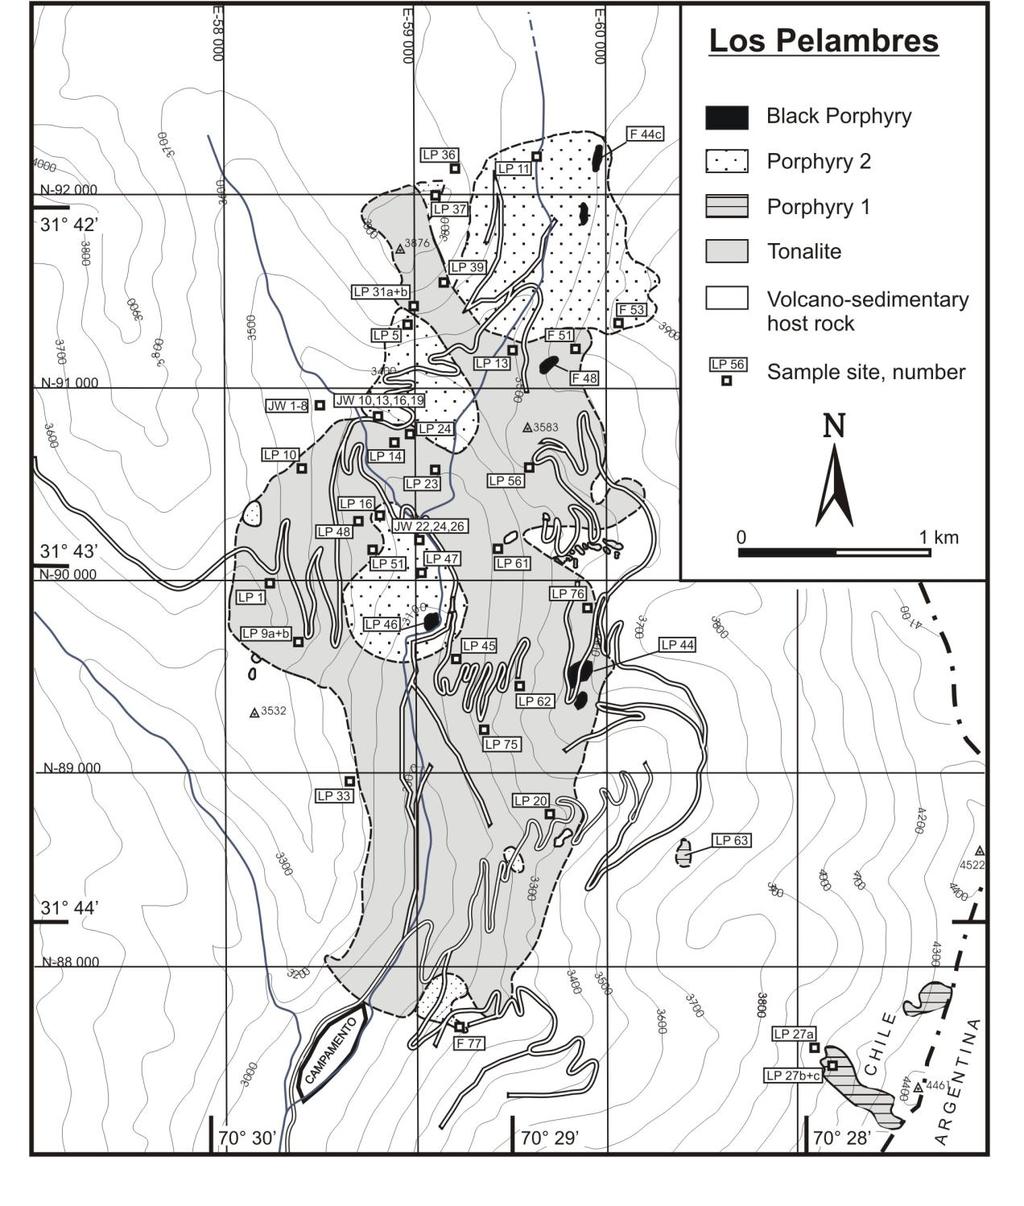 51 Abb. 2.24: Geologische Karte der obermiozänen copper porphyry-lagerstätte Los Pelambres in der chilenischen Hochkordillere.